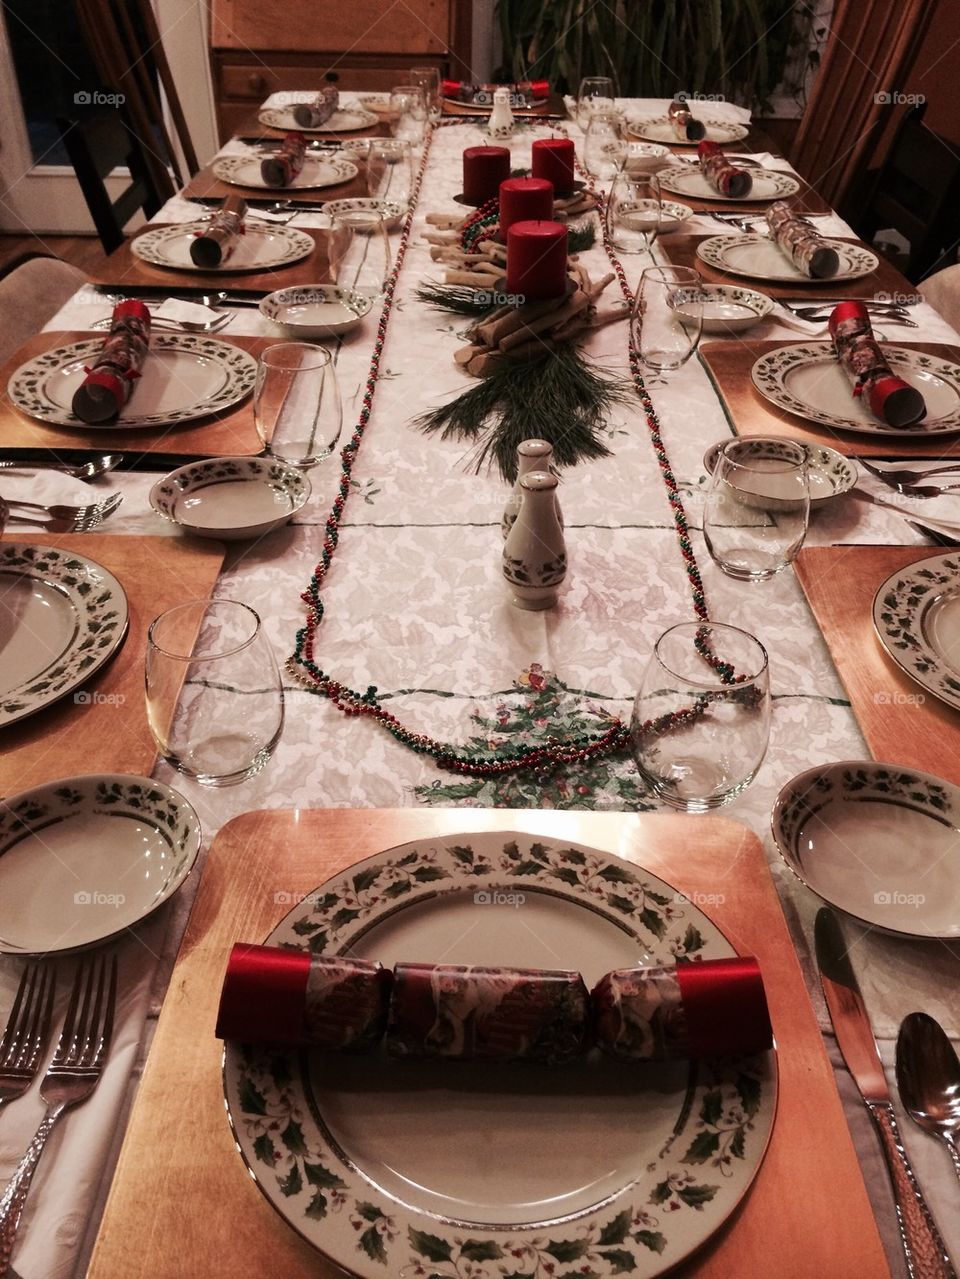 christmas table setting